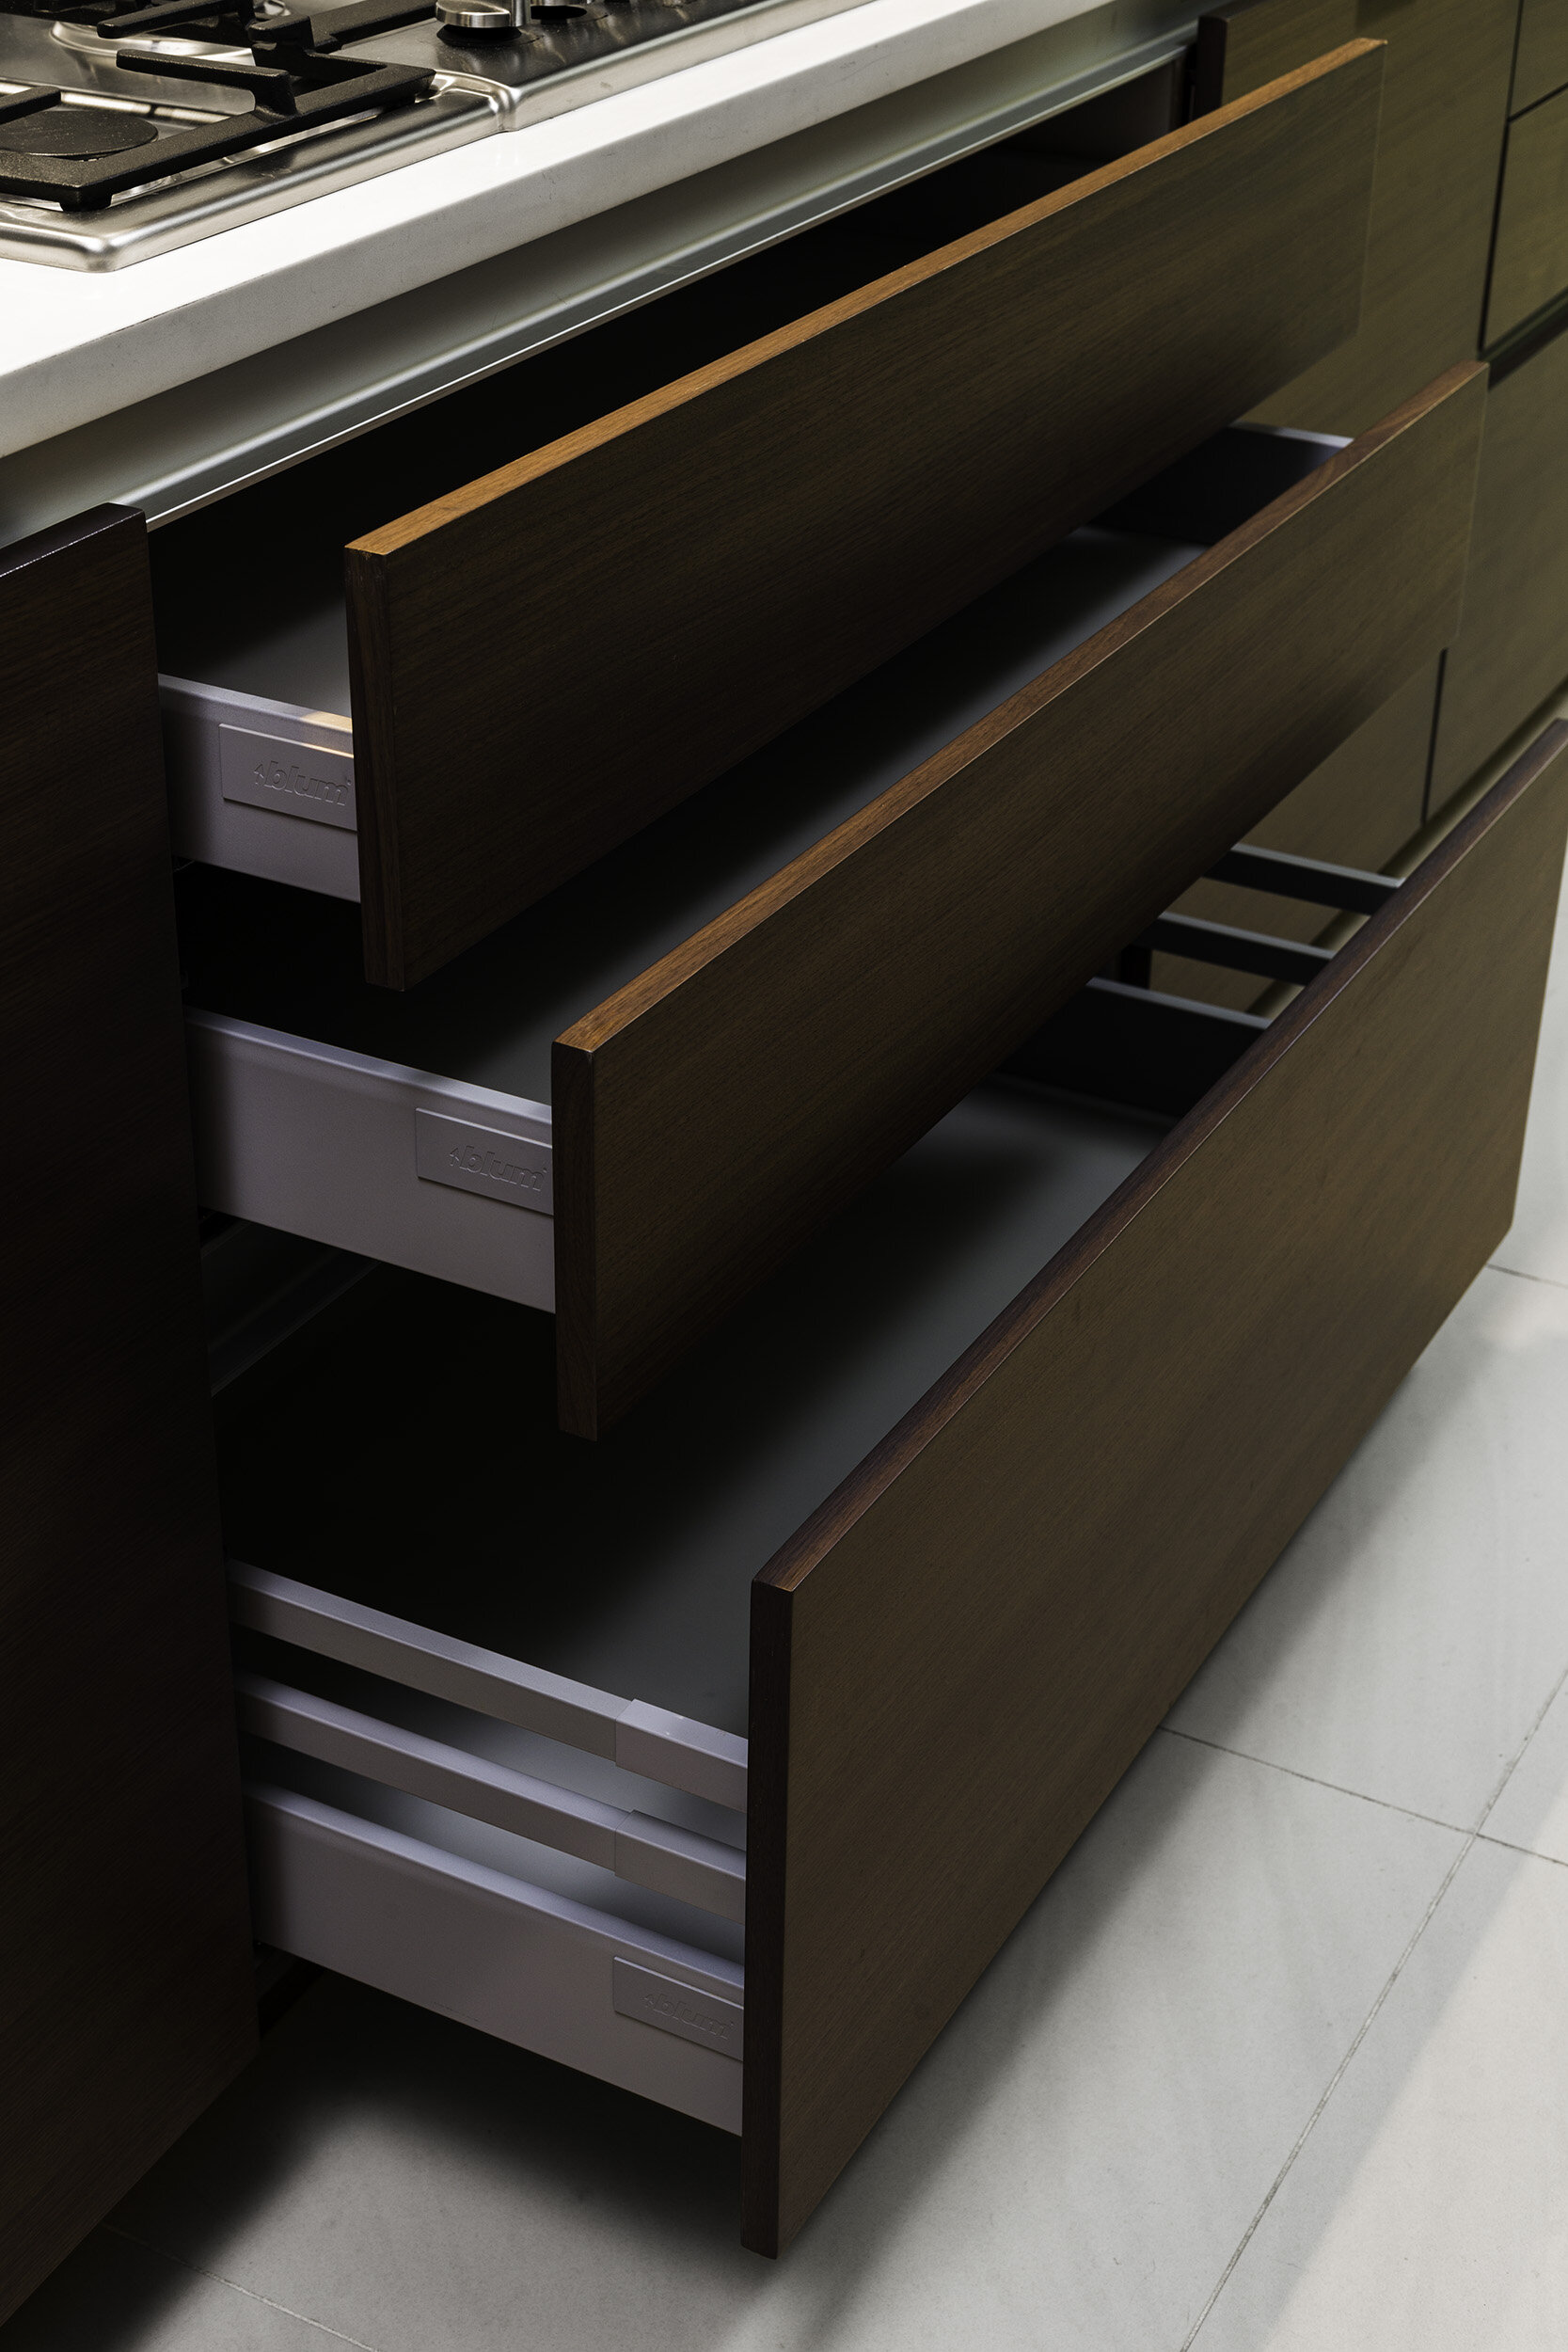 spectra-kitchen-drawers-3.jpg